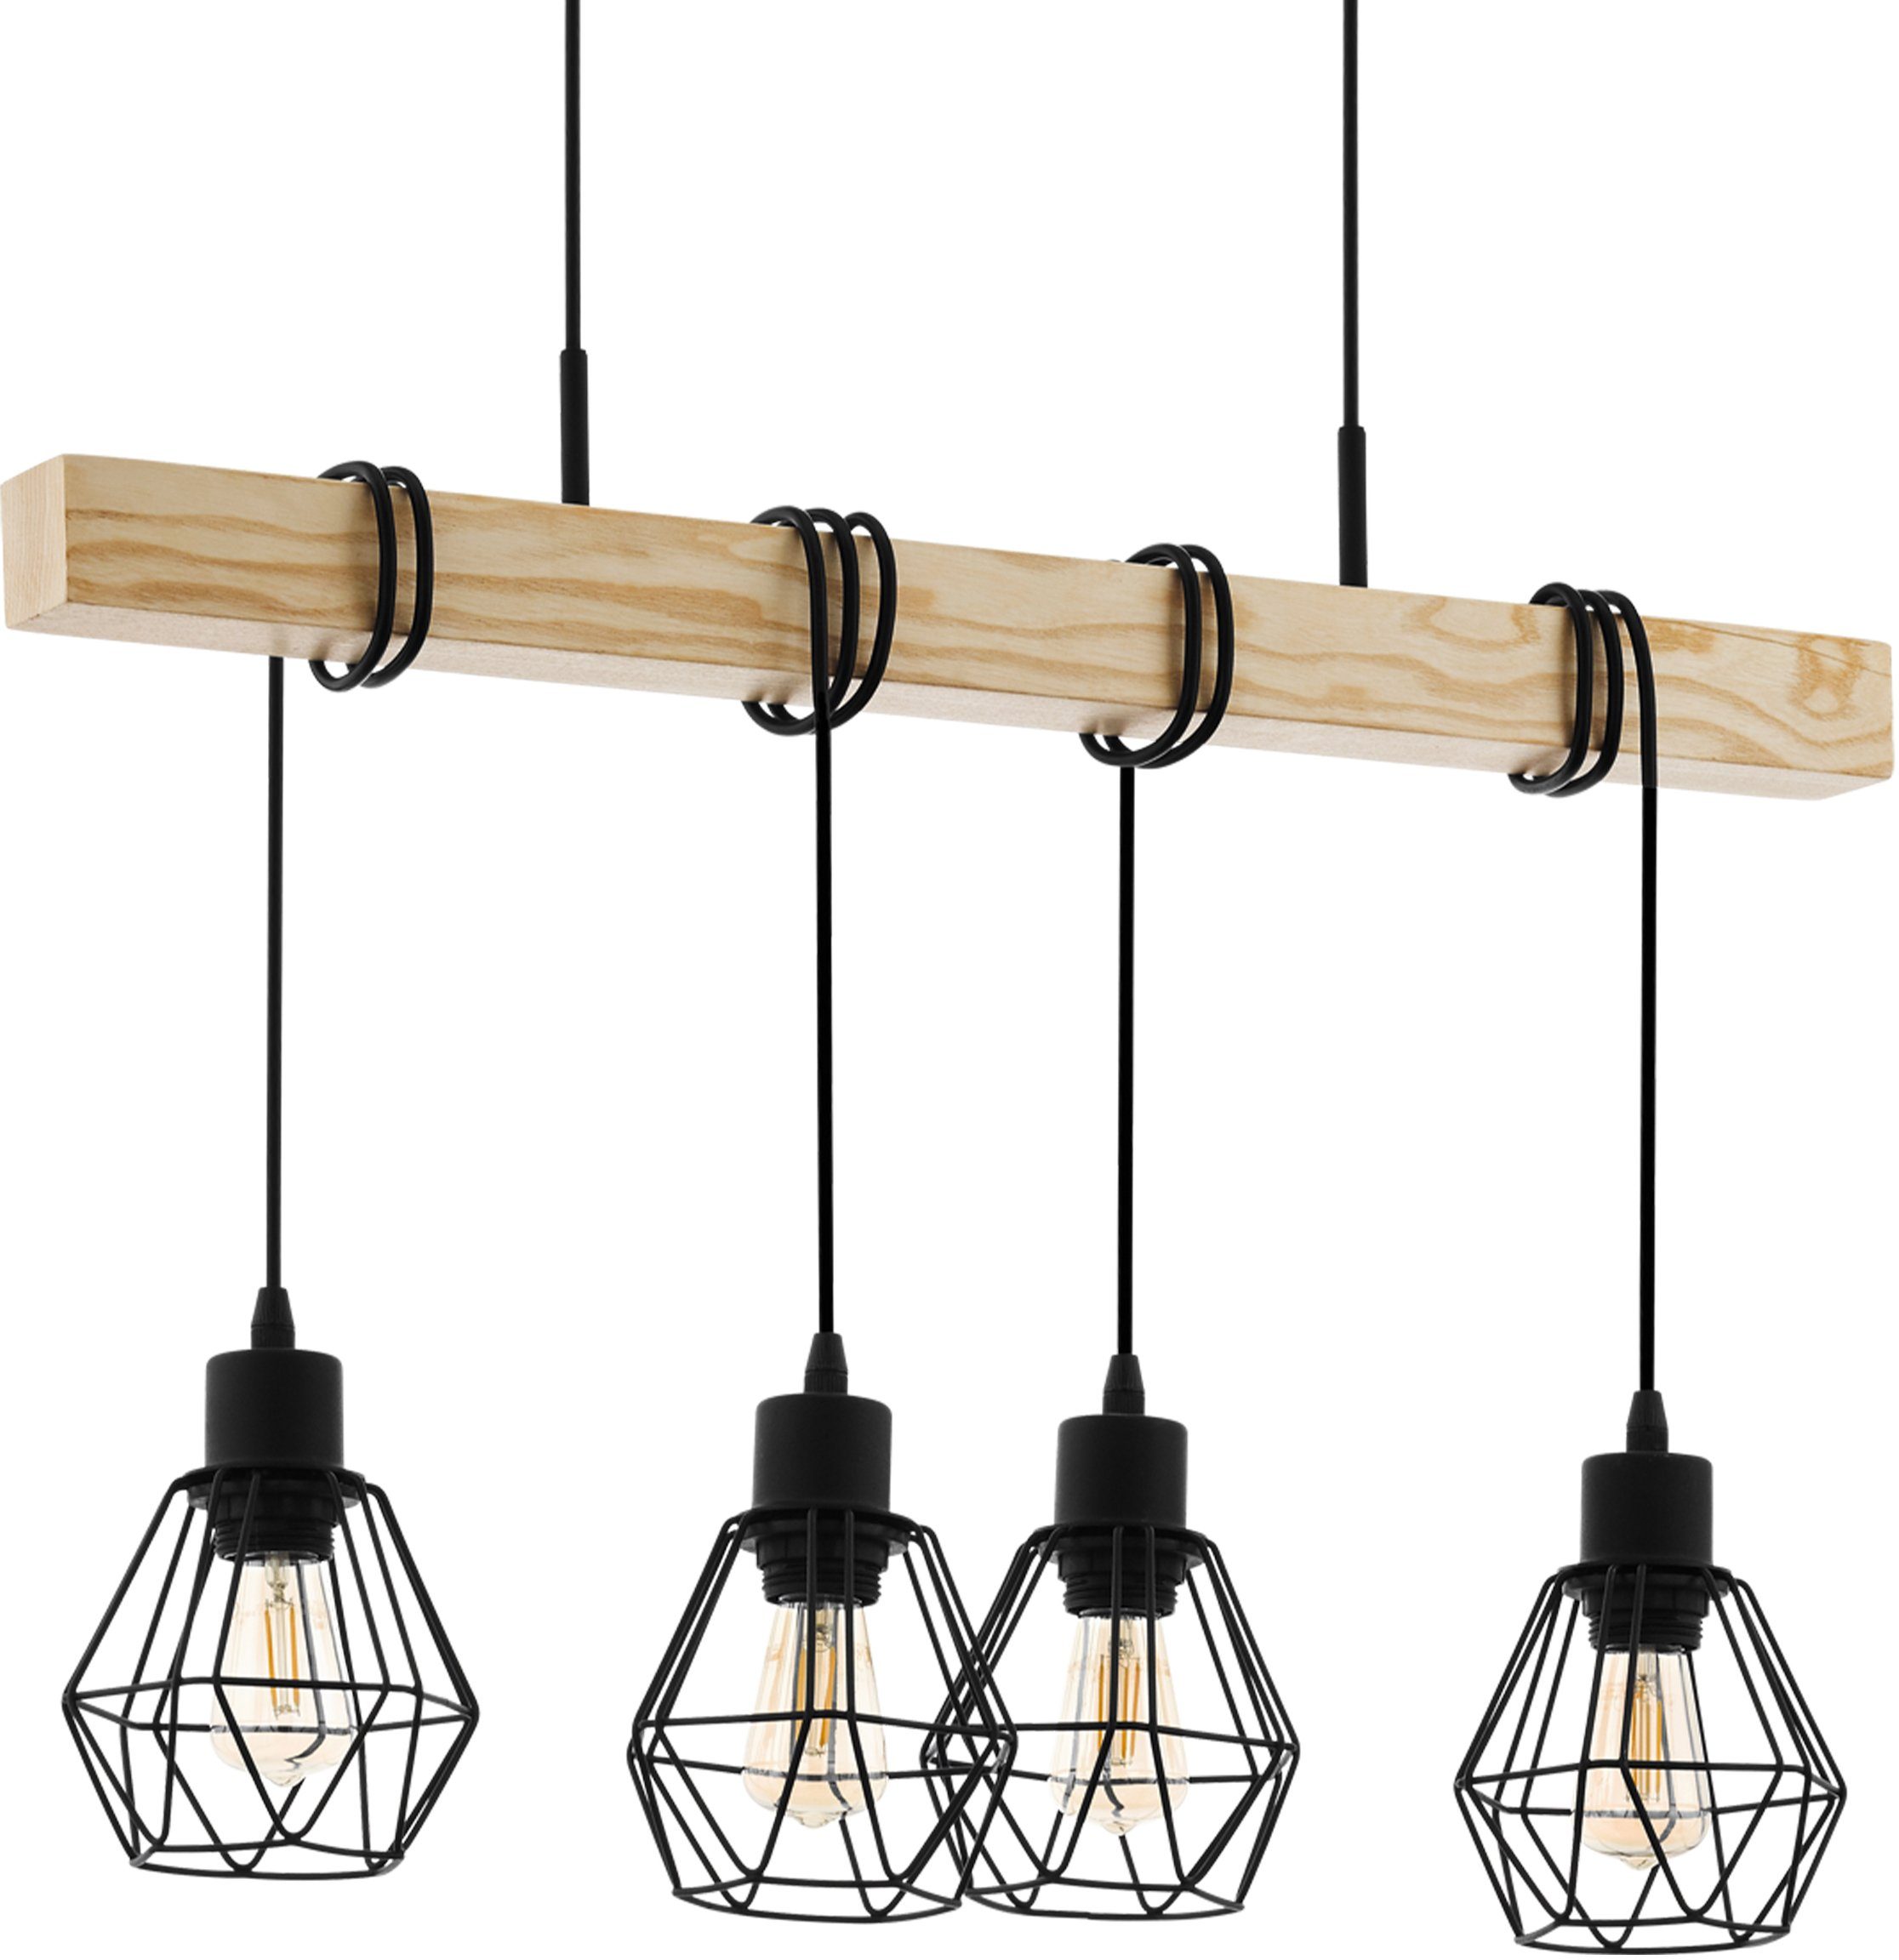 eglo hanglamp townshend 5 zwart - l70 x h110 x b20 cm - hanglamp van hout en metaal - retro bruin